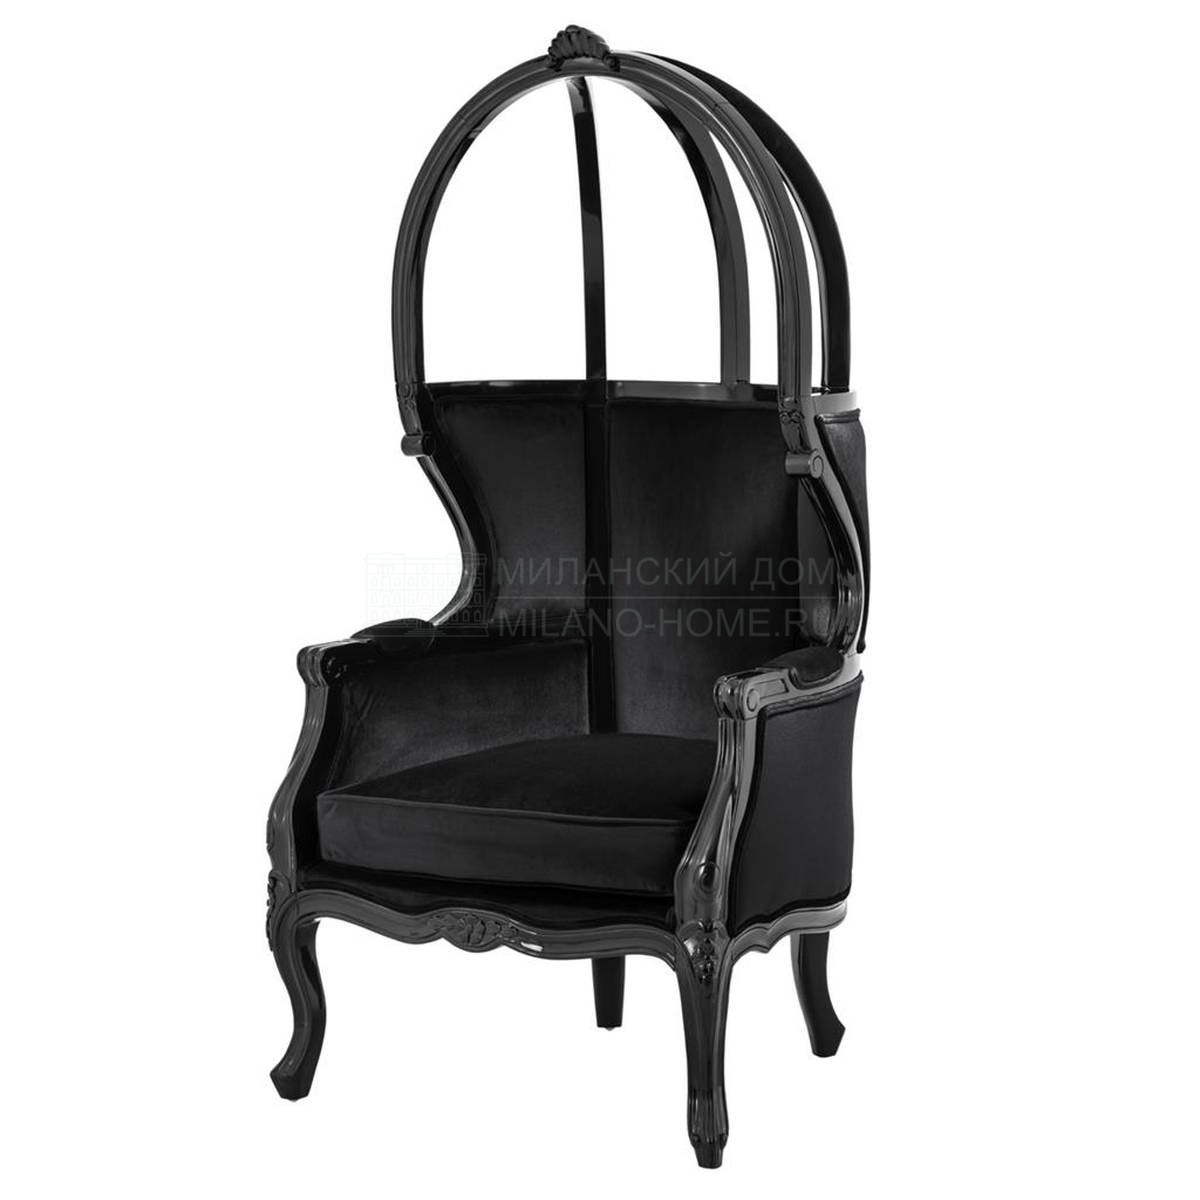 Кресло-капюшон Wellington из Голландии фабрики EICHHOLTZ